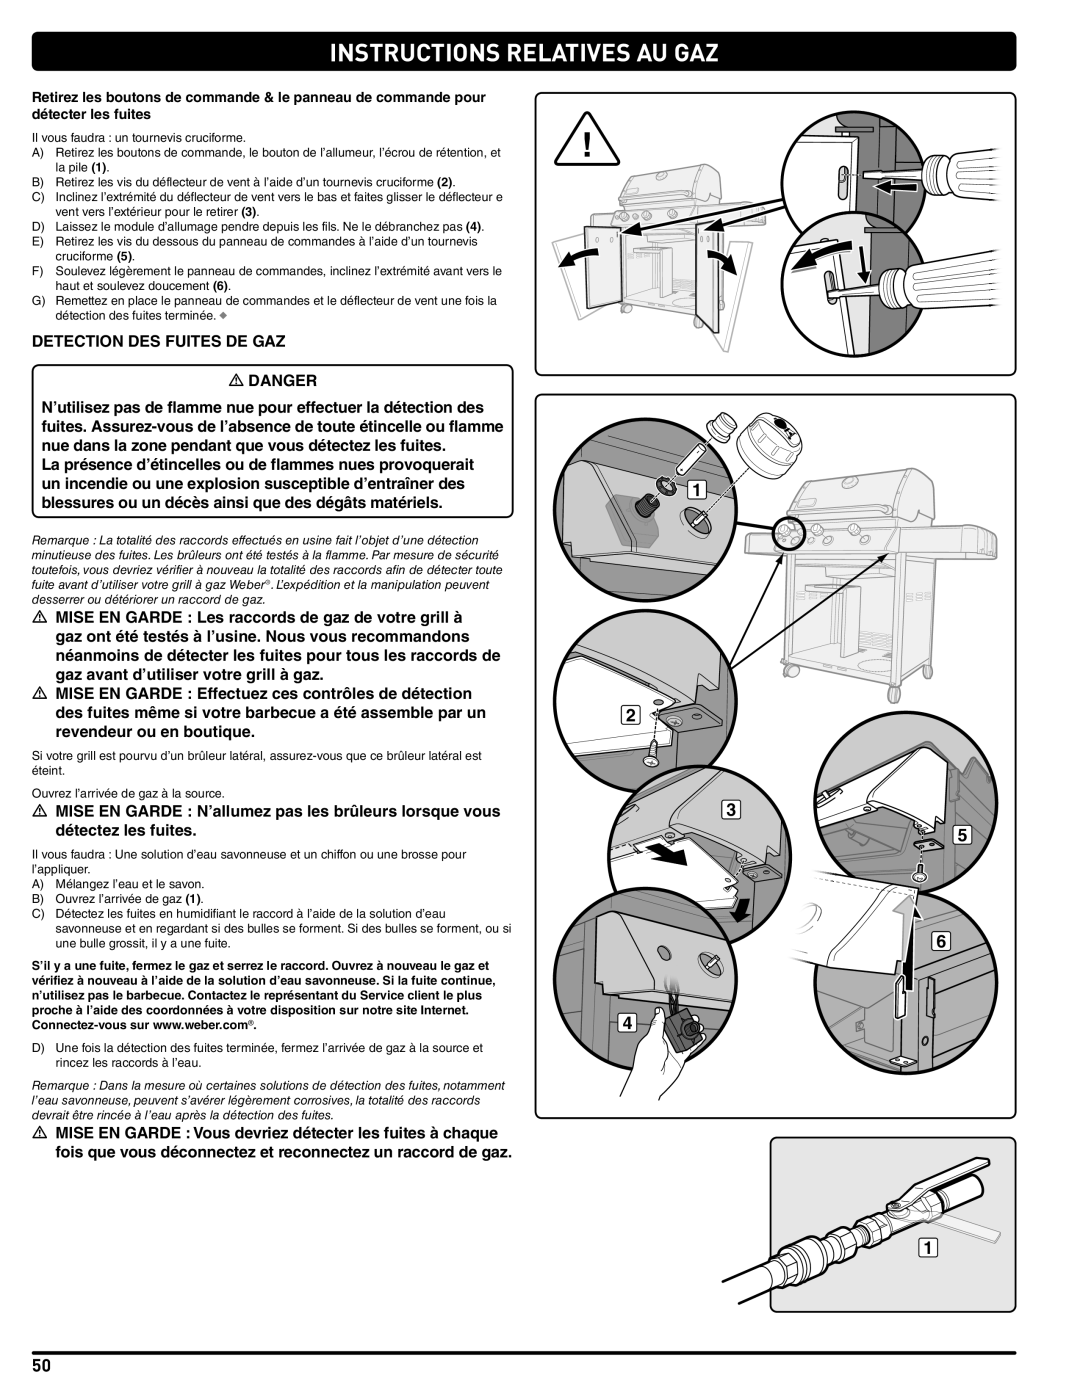 Weber 56515 manual Instructions Relatives Au Gaz, DETECTION DES FUITES DE GAZ m DANGER 